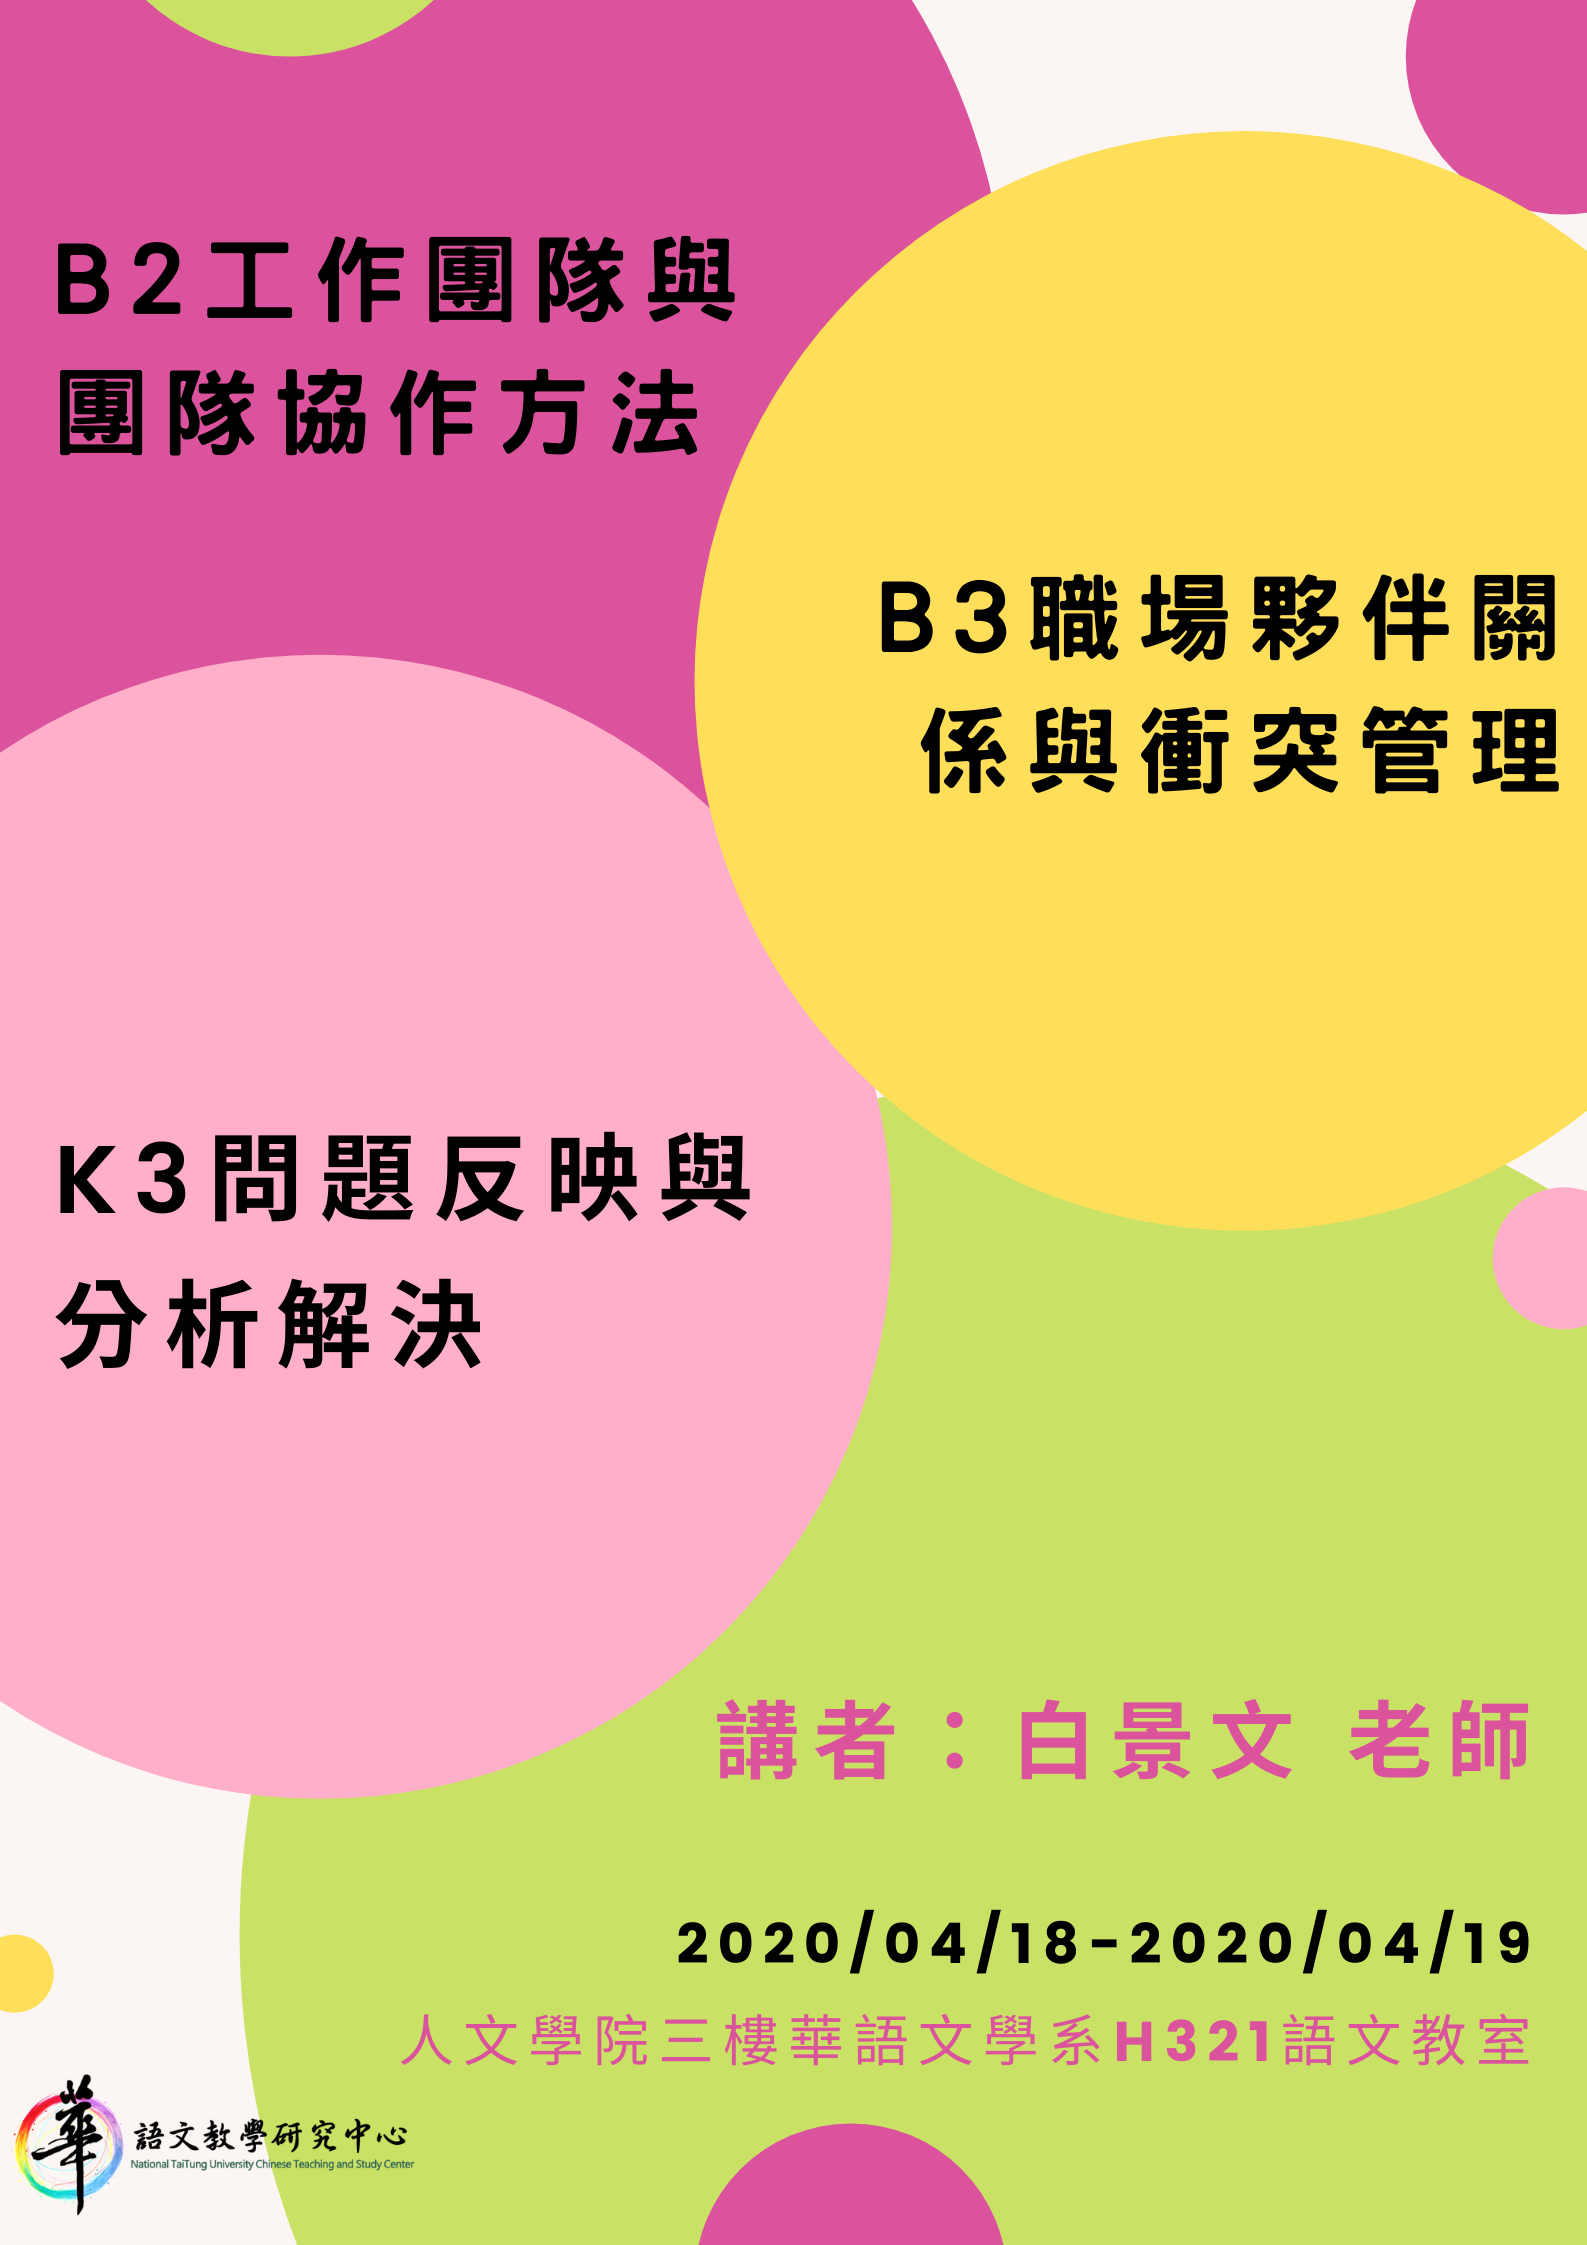 108學年度華語文雲端數位編輯學程-B2工作團隊與團隊協作方法、B3職場夥伴關係與衝突管理、K3問題反映與分析解決